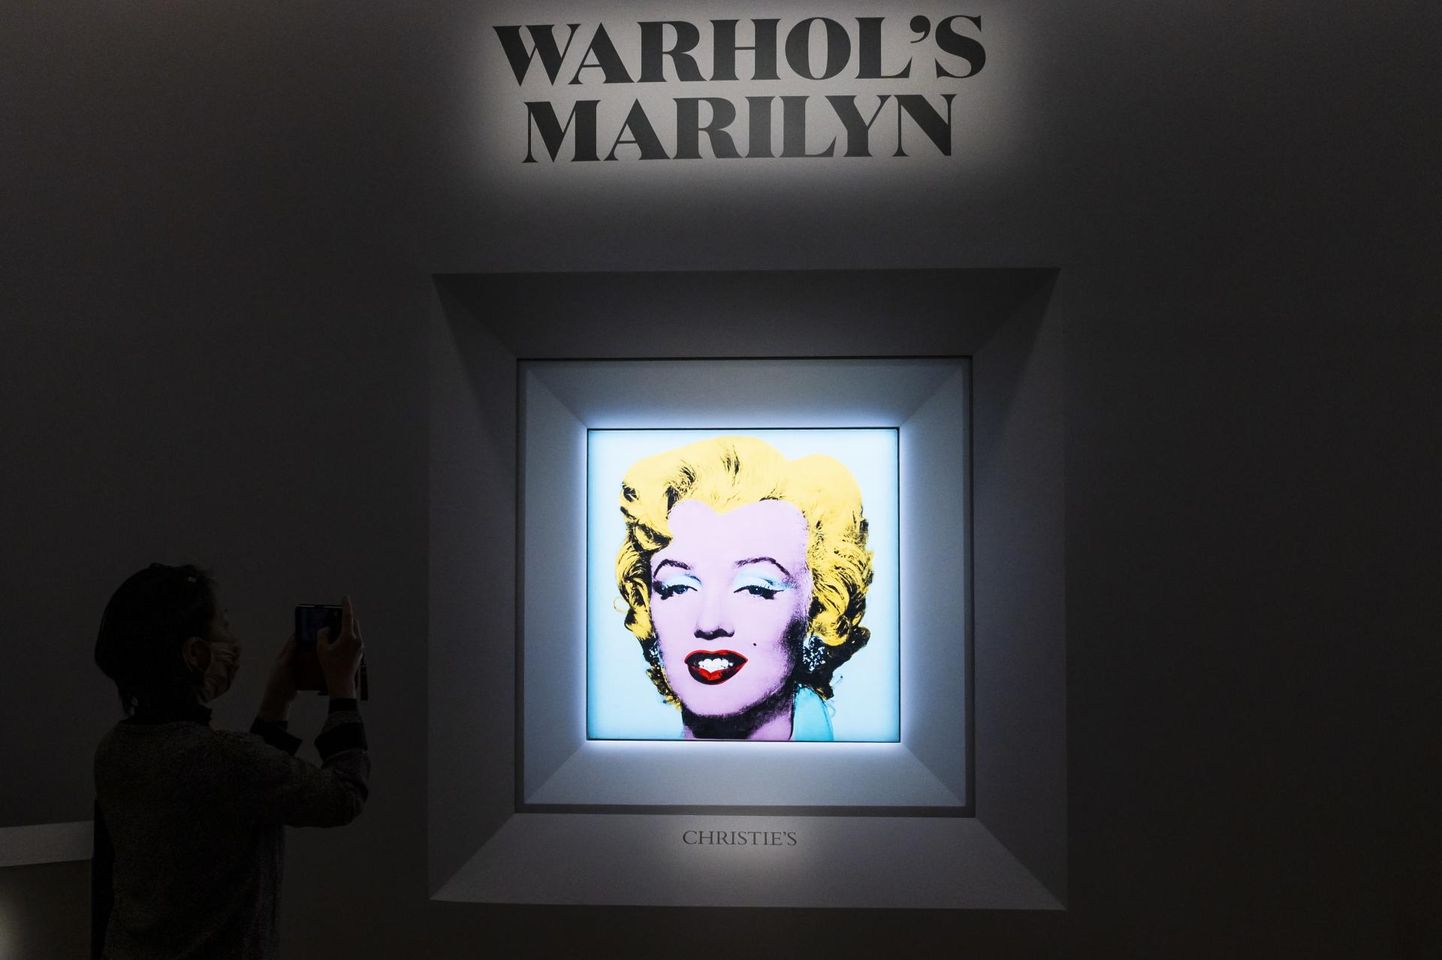 Surnud tähe kuma Christie’s oksjonil. Andy Warholi «Shot Sage Blue Marilyn» (1964) loodetakse minevat 200 miljoniga kaubaks. Varasem Warholi oksjonirekord kuulub 2013. aastal 105,4 miljoni USA dollariga müüdud teosele «Silver Car Crash (Double Disaster)». Kõige kallim 20. sajandi maal, mis on kunagi oksjonil müüdud, on Picasso «Les femmes d’Alger» (versioon «O»), mille eest maksti 2015. aasta mais 179 miljonit USA dollarit. 